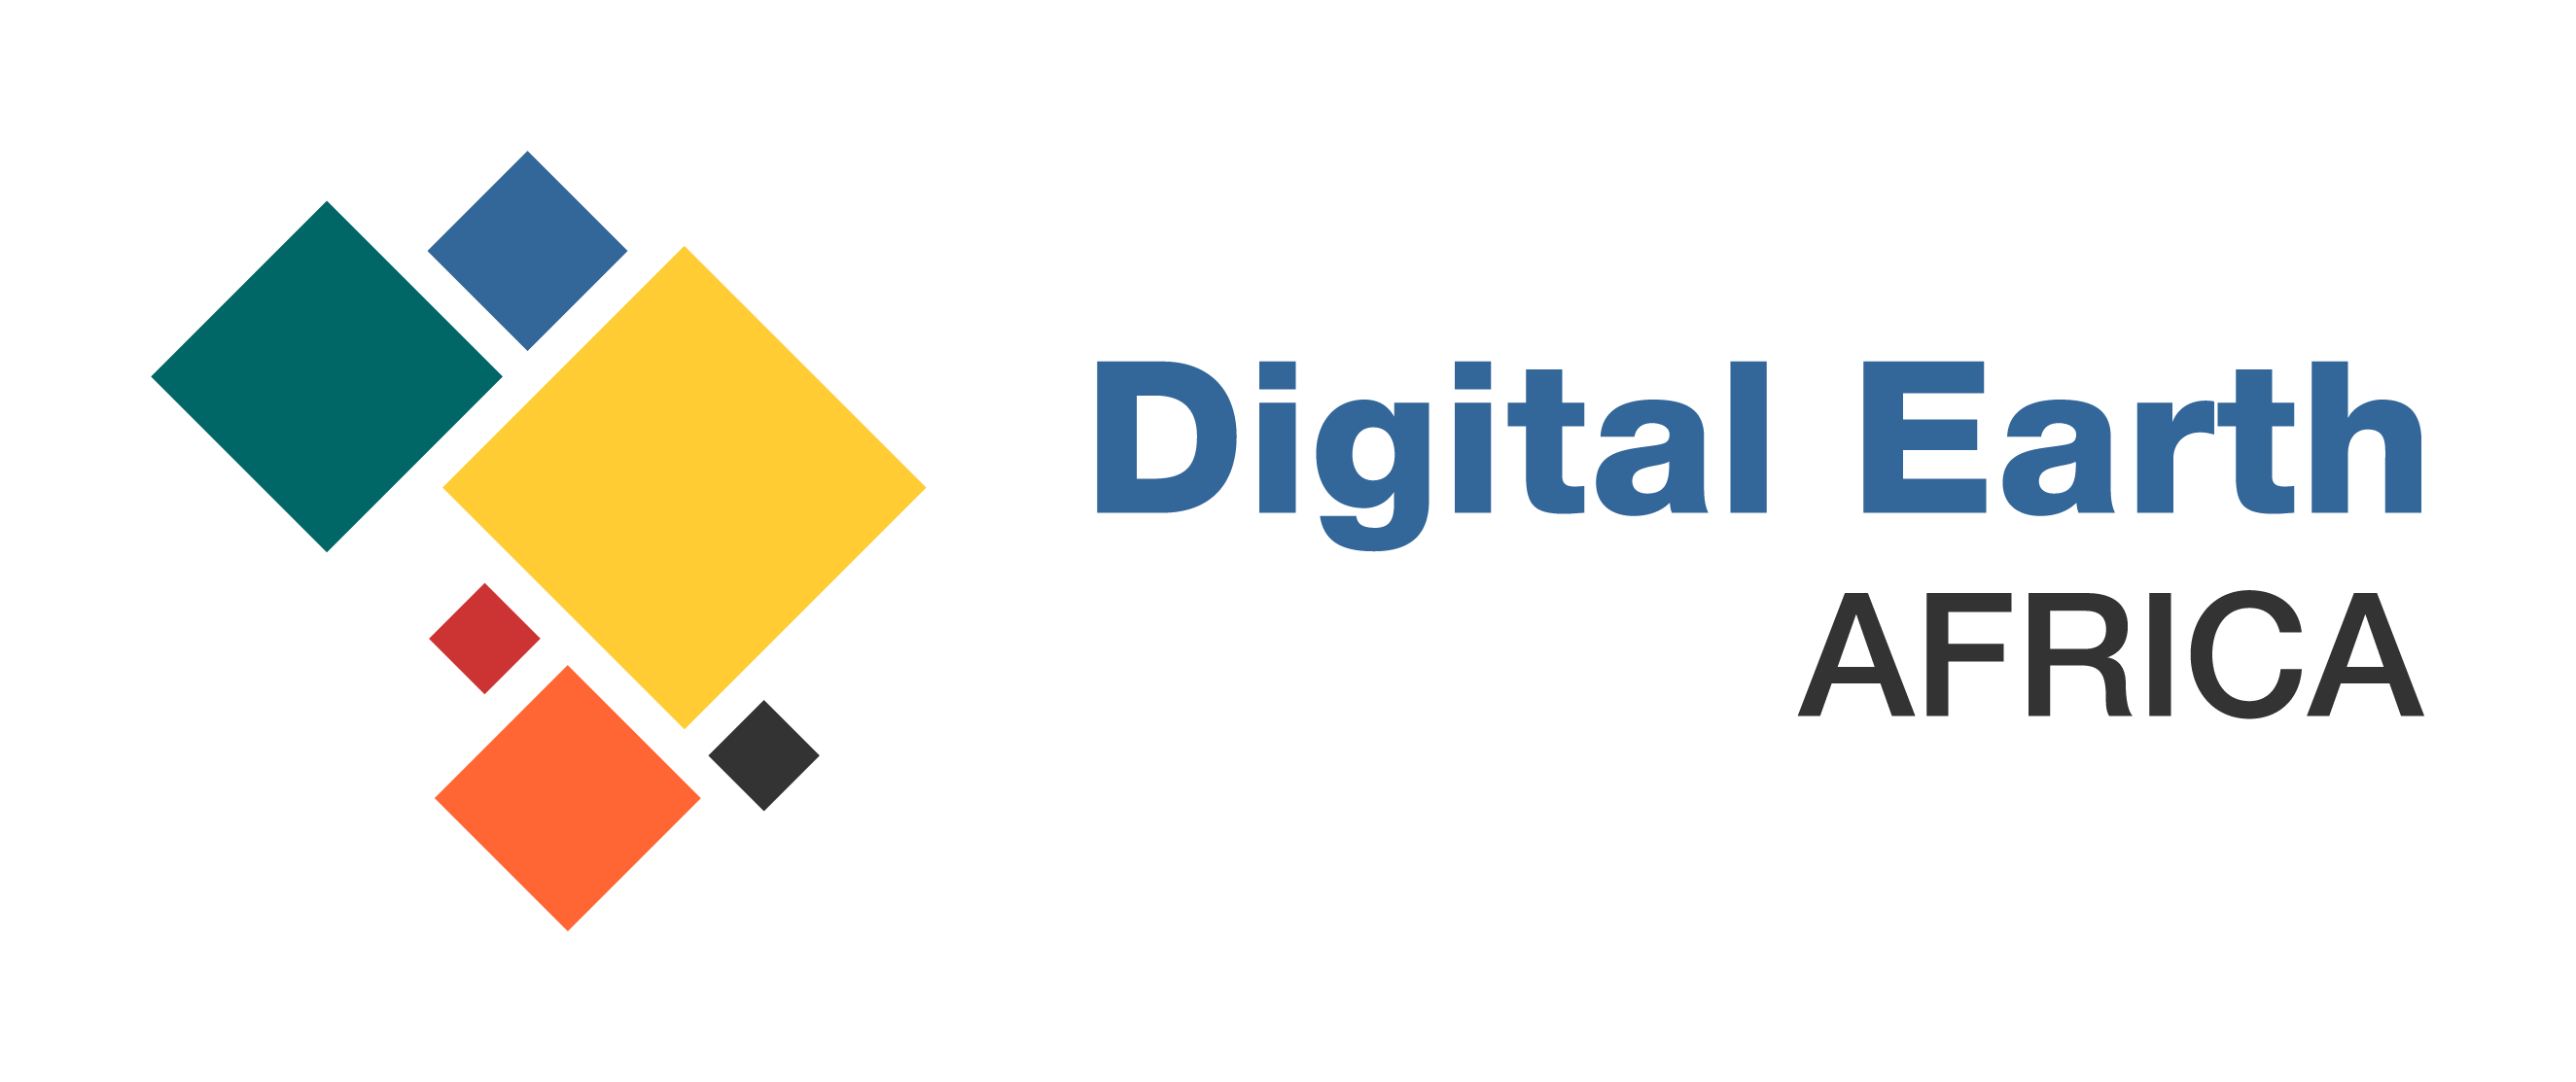 Digital Earth Africa logo